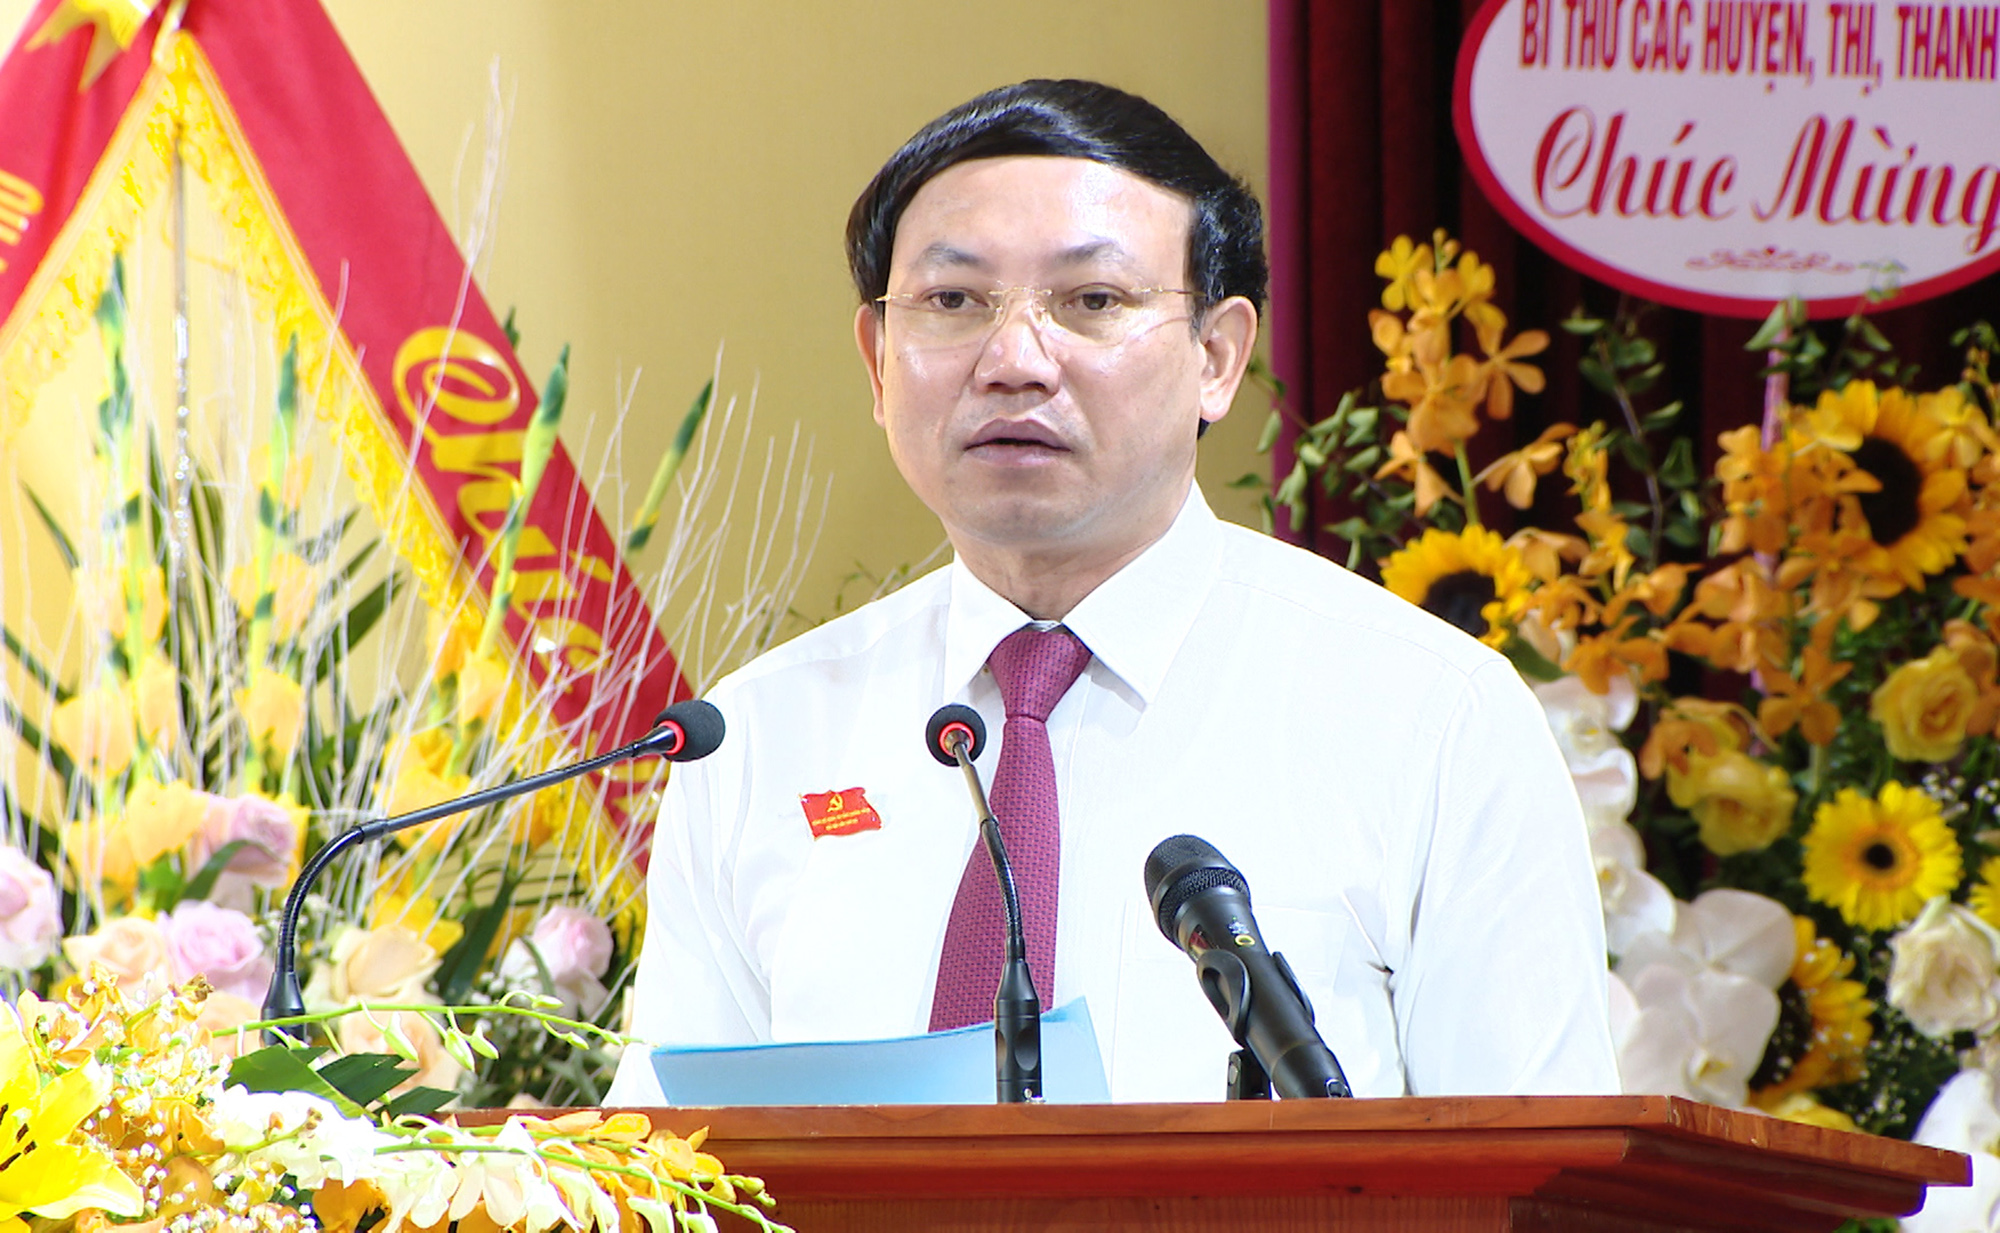 Đồng chí Nguyễn Xuân Ký, Bí thư Tỉnh ủy, Chủ tịch HĐND tỉnh, phát biểu bế mạc đại hội.